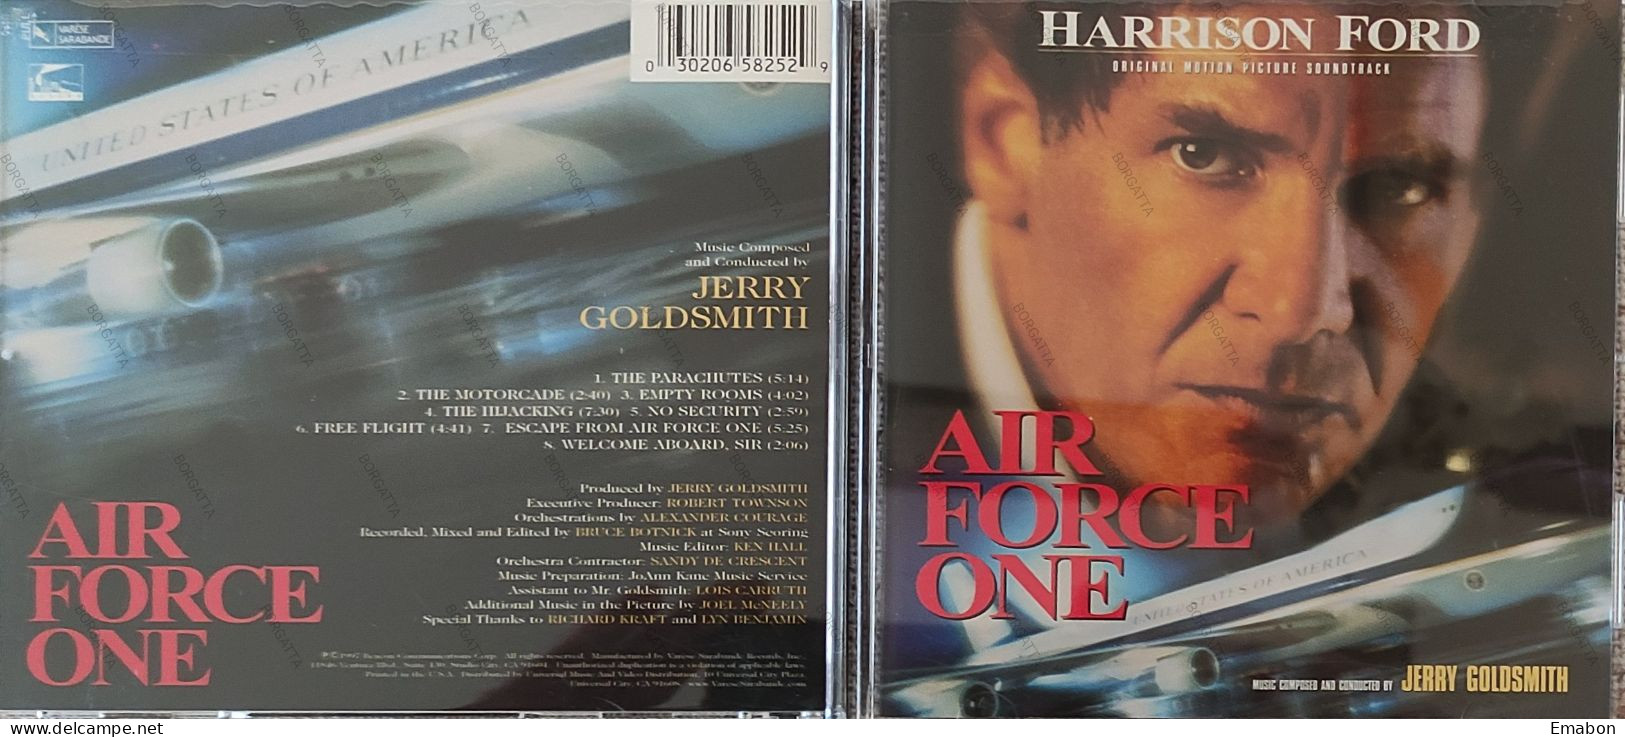 BORGATTA - FILM MUSIC  - Cd  HARRISON FORD - AIR FORCE ONE - VARESE SARABANDE 1997 - USATO In Buono Stato - Musique De Films